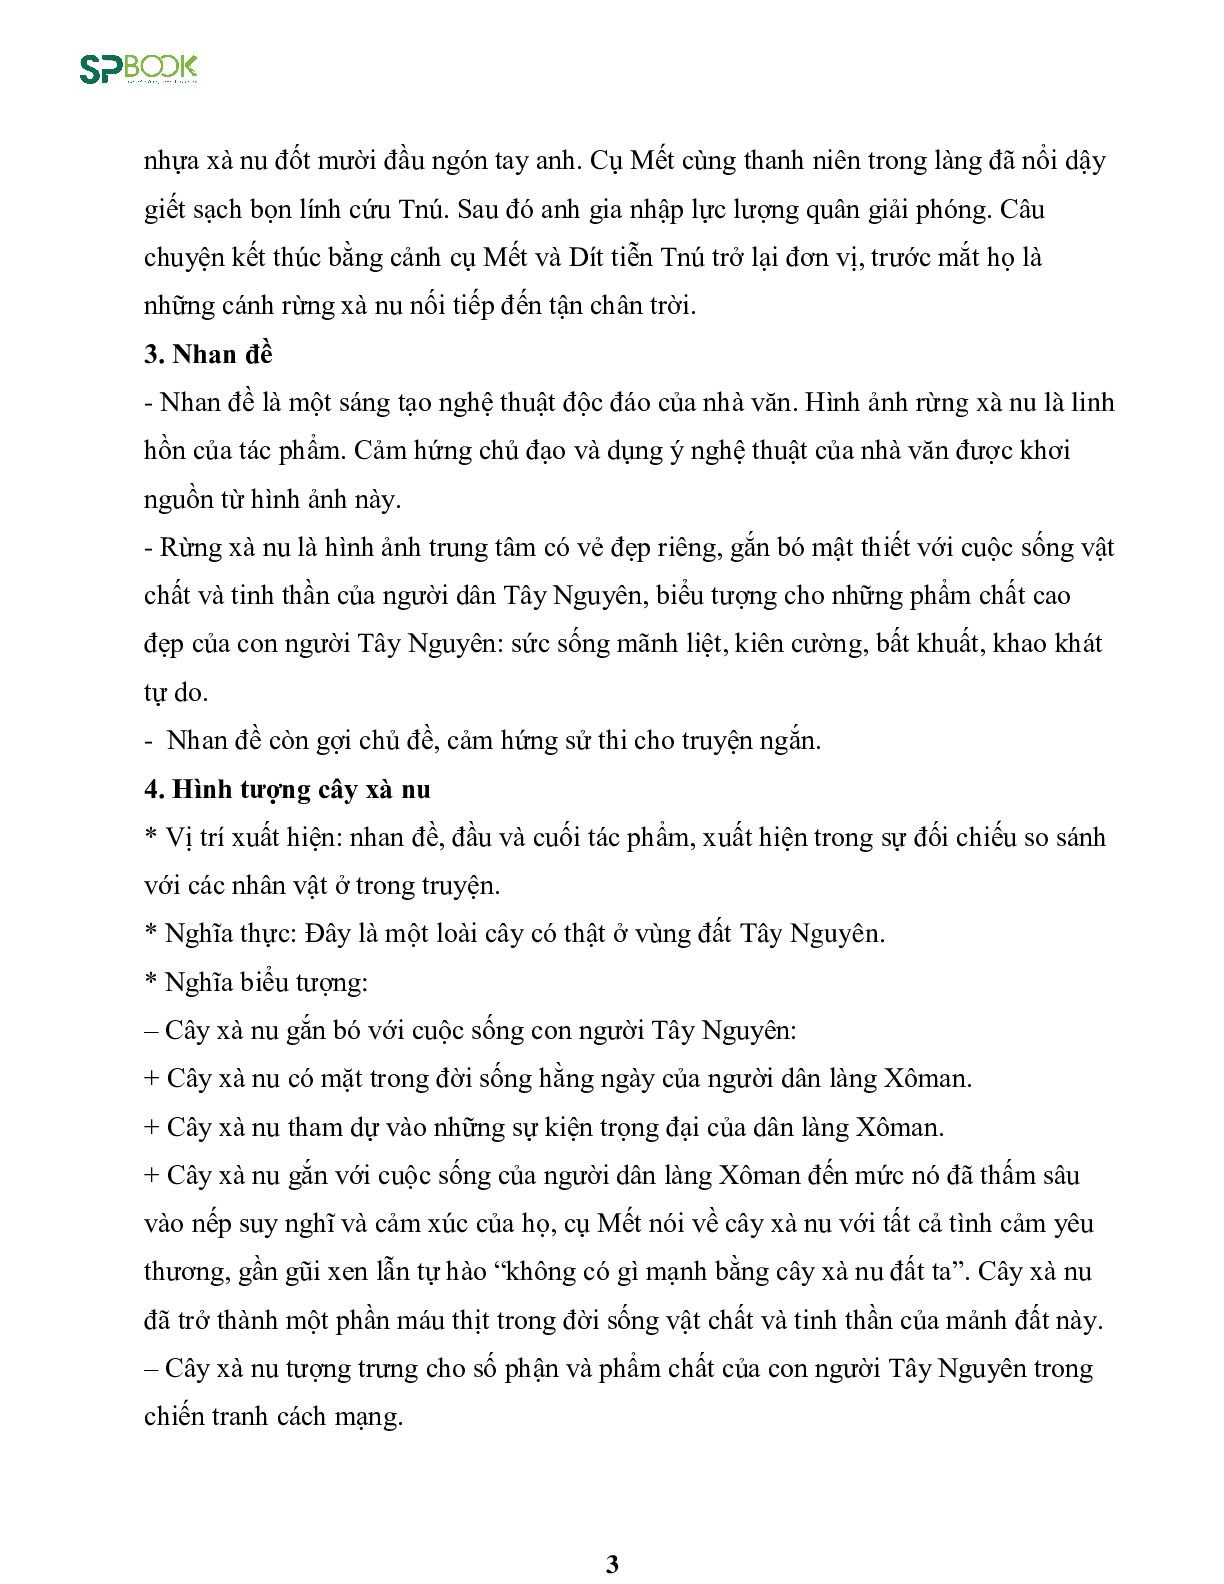 Kiến thức cơ bản và những dạng đề thi về bài Rừng xà nu - Nguyễn Trung Thành Ngữ văn 12 (trang 3)